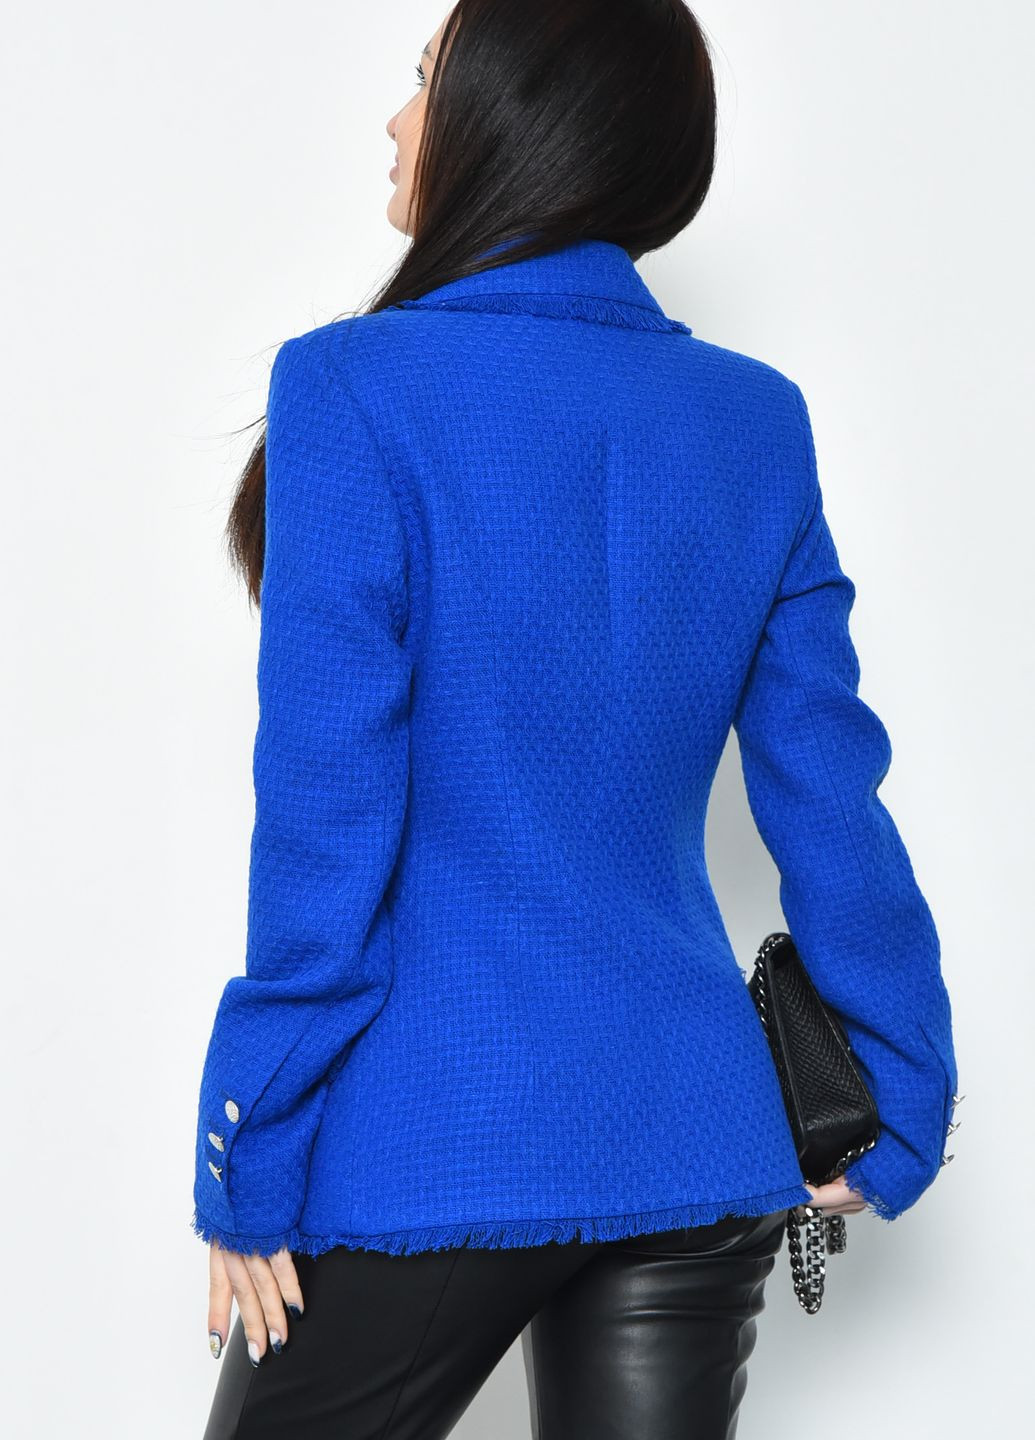 Синий женский пиджак женский синего цвета Let's Shop с орнаментом - демисезонный